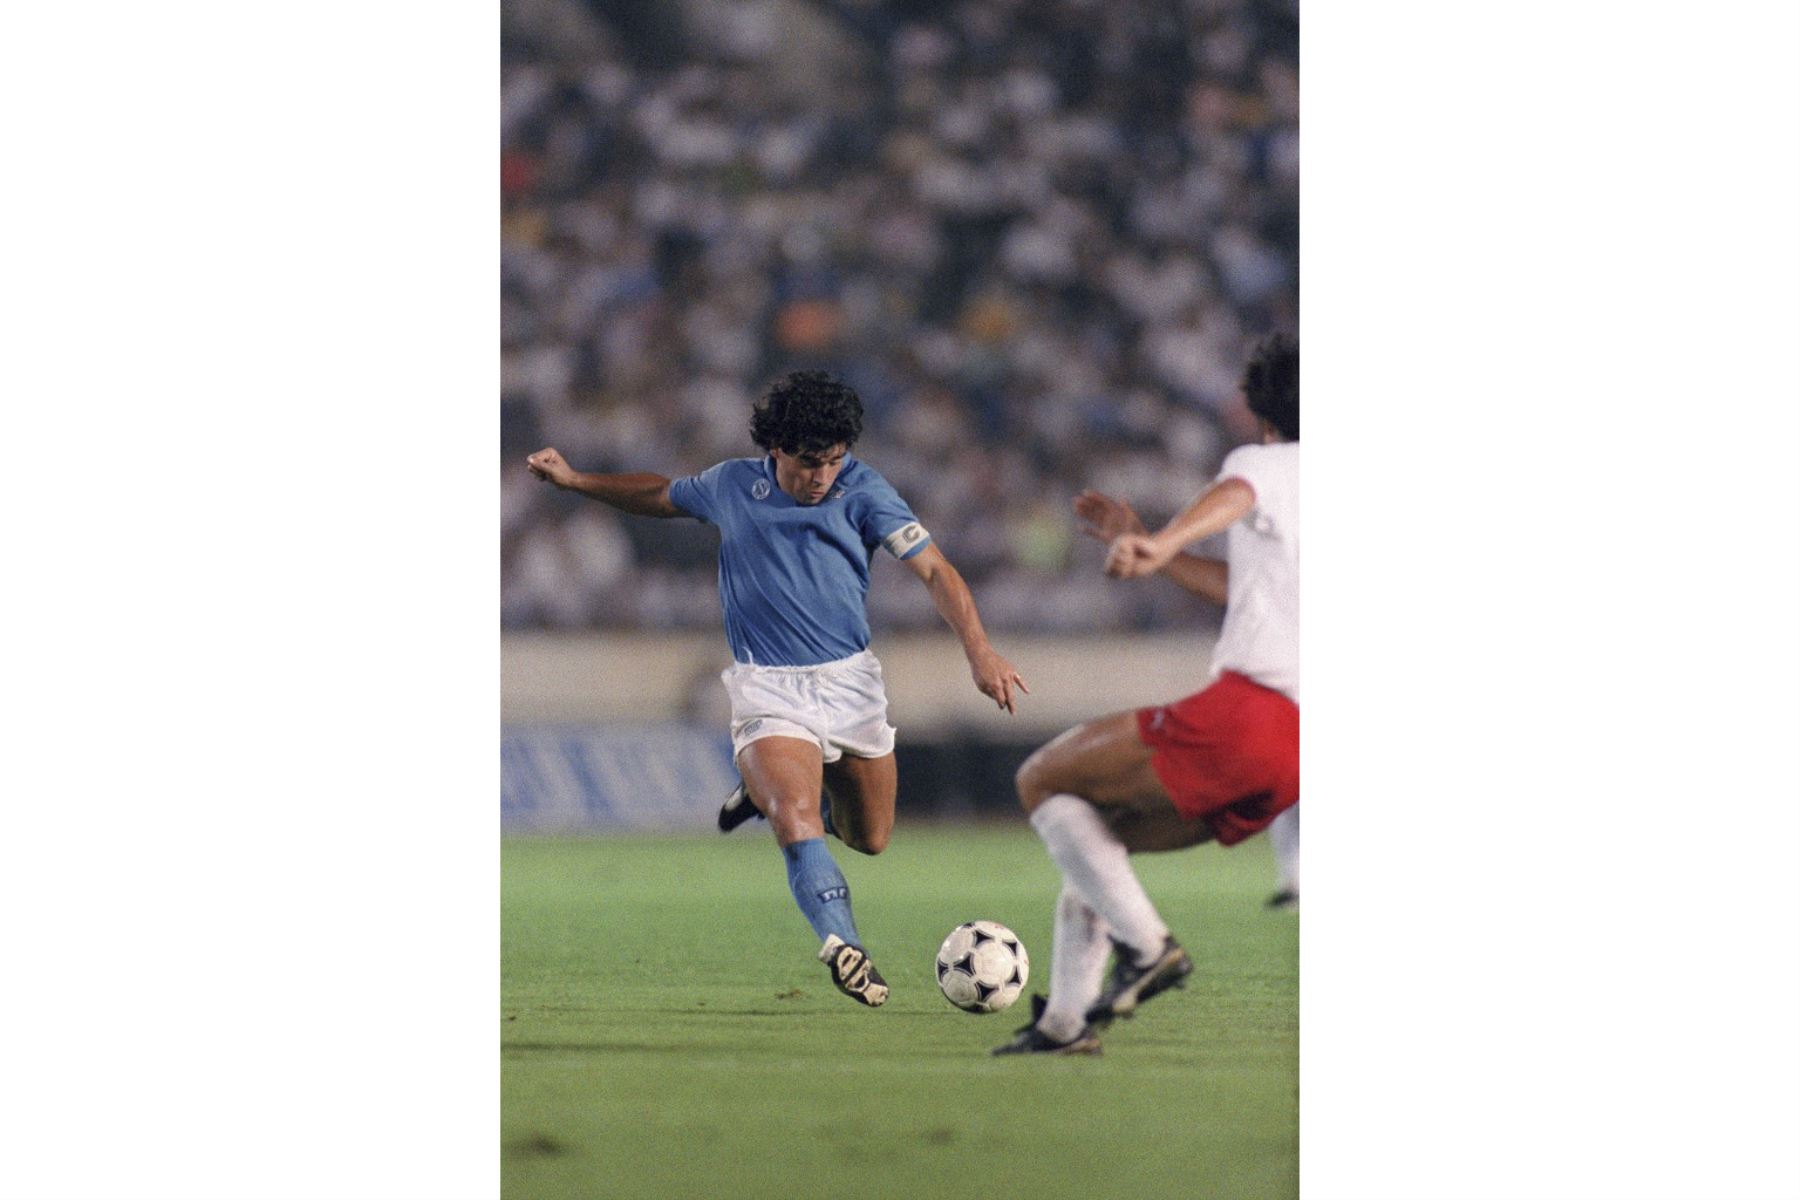 La superestrella del fútbol argentino Diego Maradona (L) de S.S.C Napoli está a punto de disparar un balón a la portería durante el Xerox Super Soccer el 12 de agosto de 1988 contra la Selección Nacional de Japón en Tokio. Napoli ganó el juego 2-0.  Foto: AFP